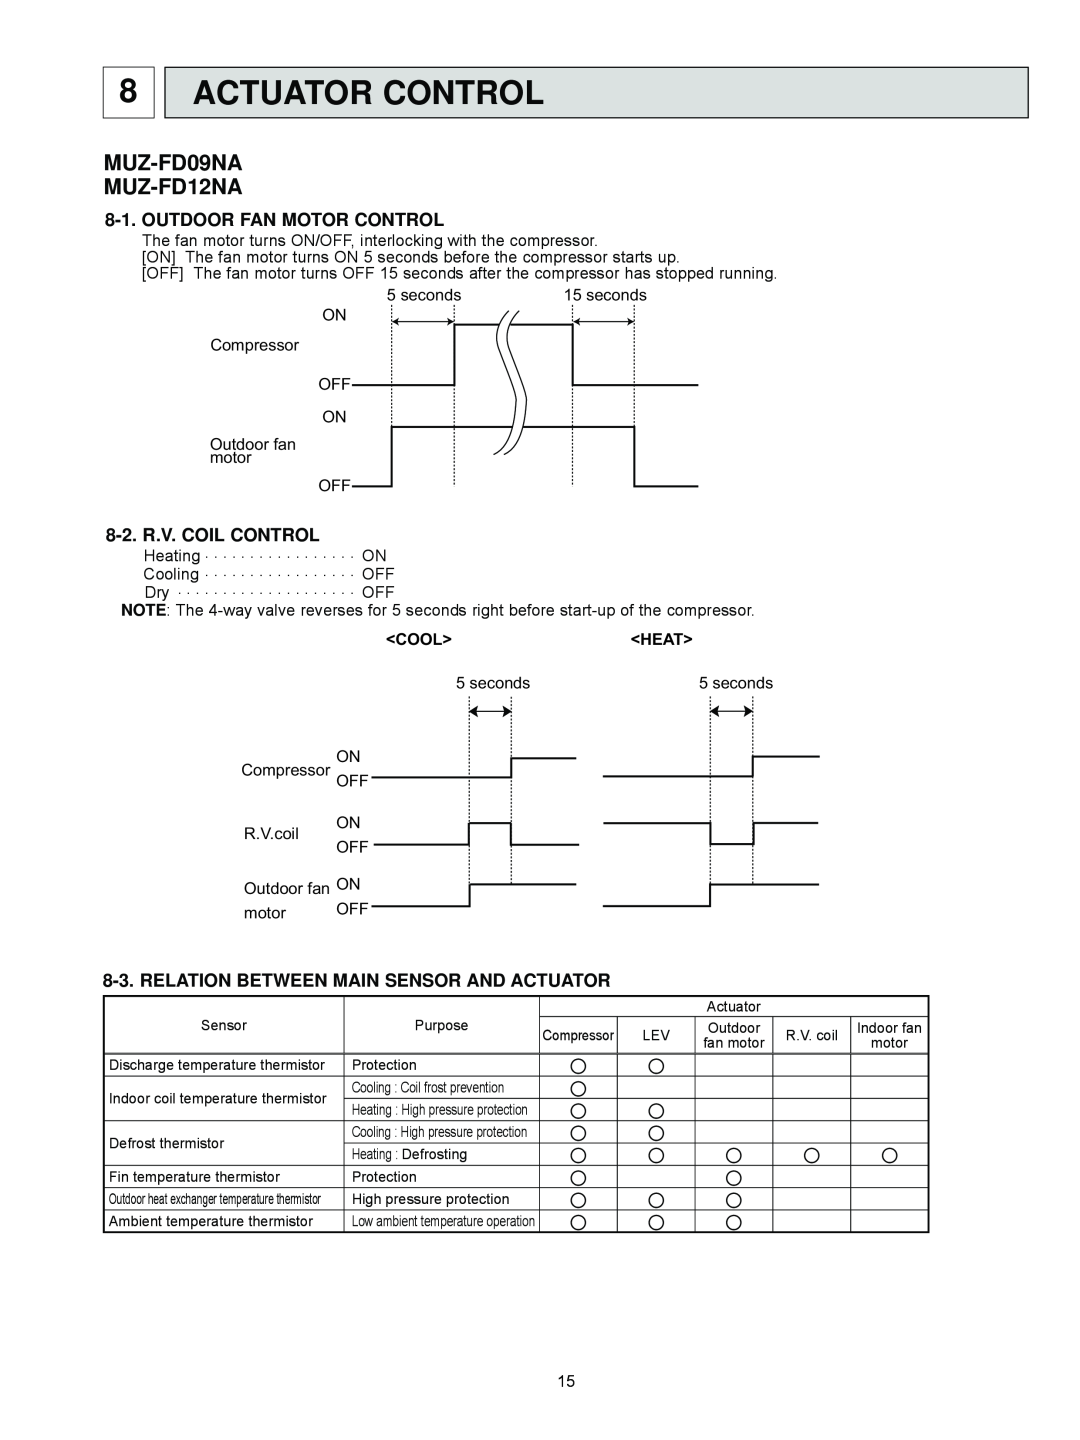 Black & Decker service manual Actuator Control, MUZ-FD09NA MUZ-FD12NA, Outdoor Fan Motor Control, 8-2.R.V. COIL CONTROL 